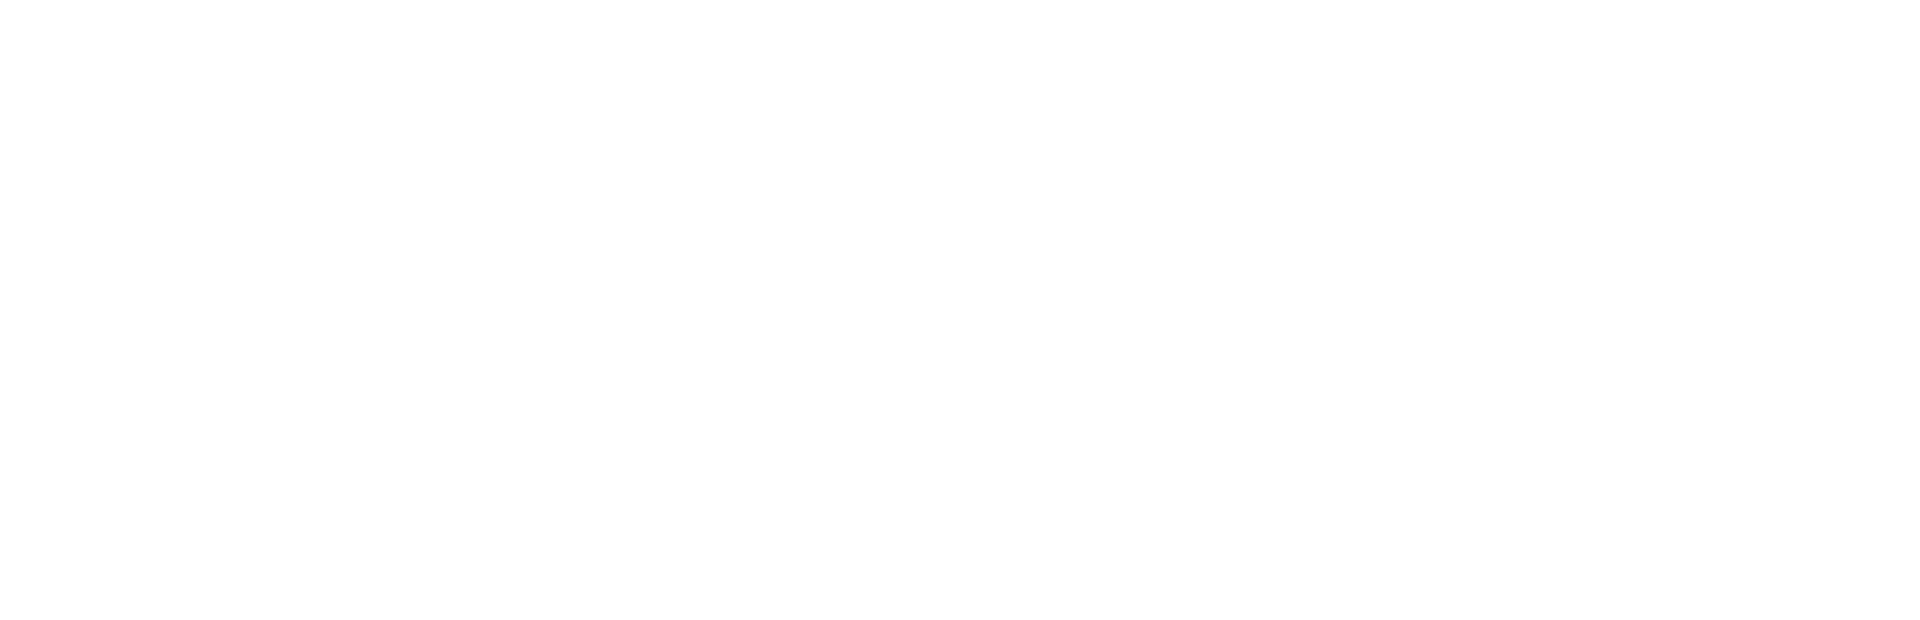 Bass World League